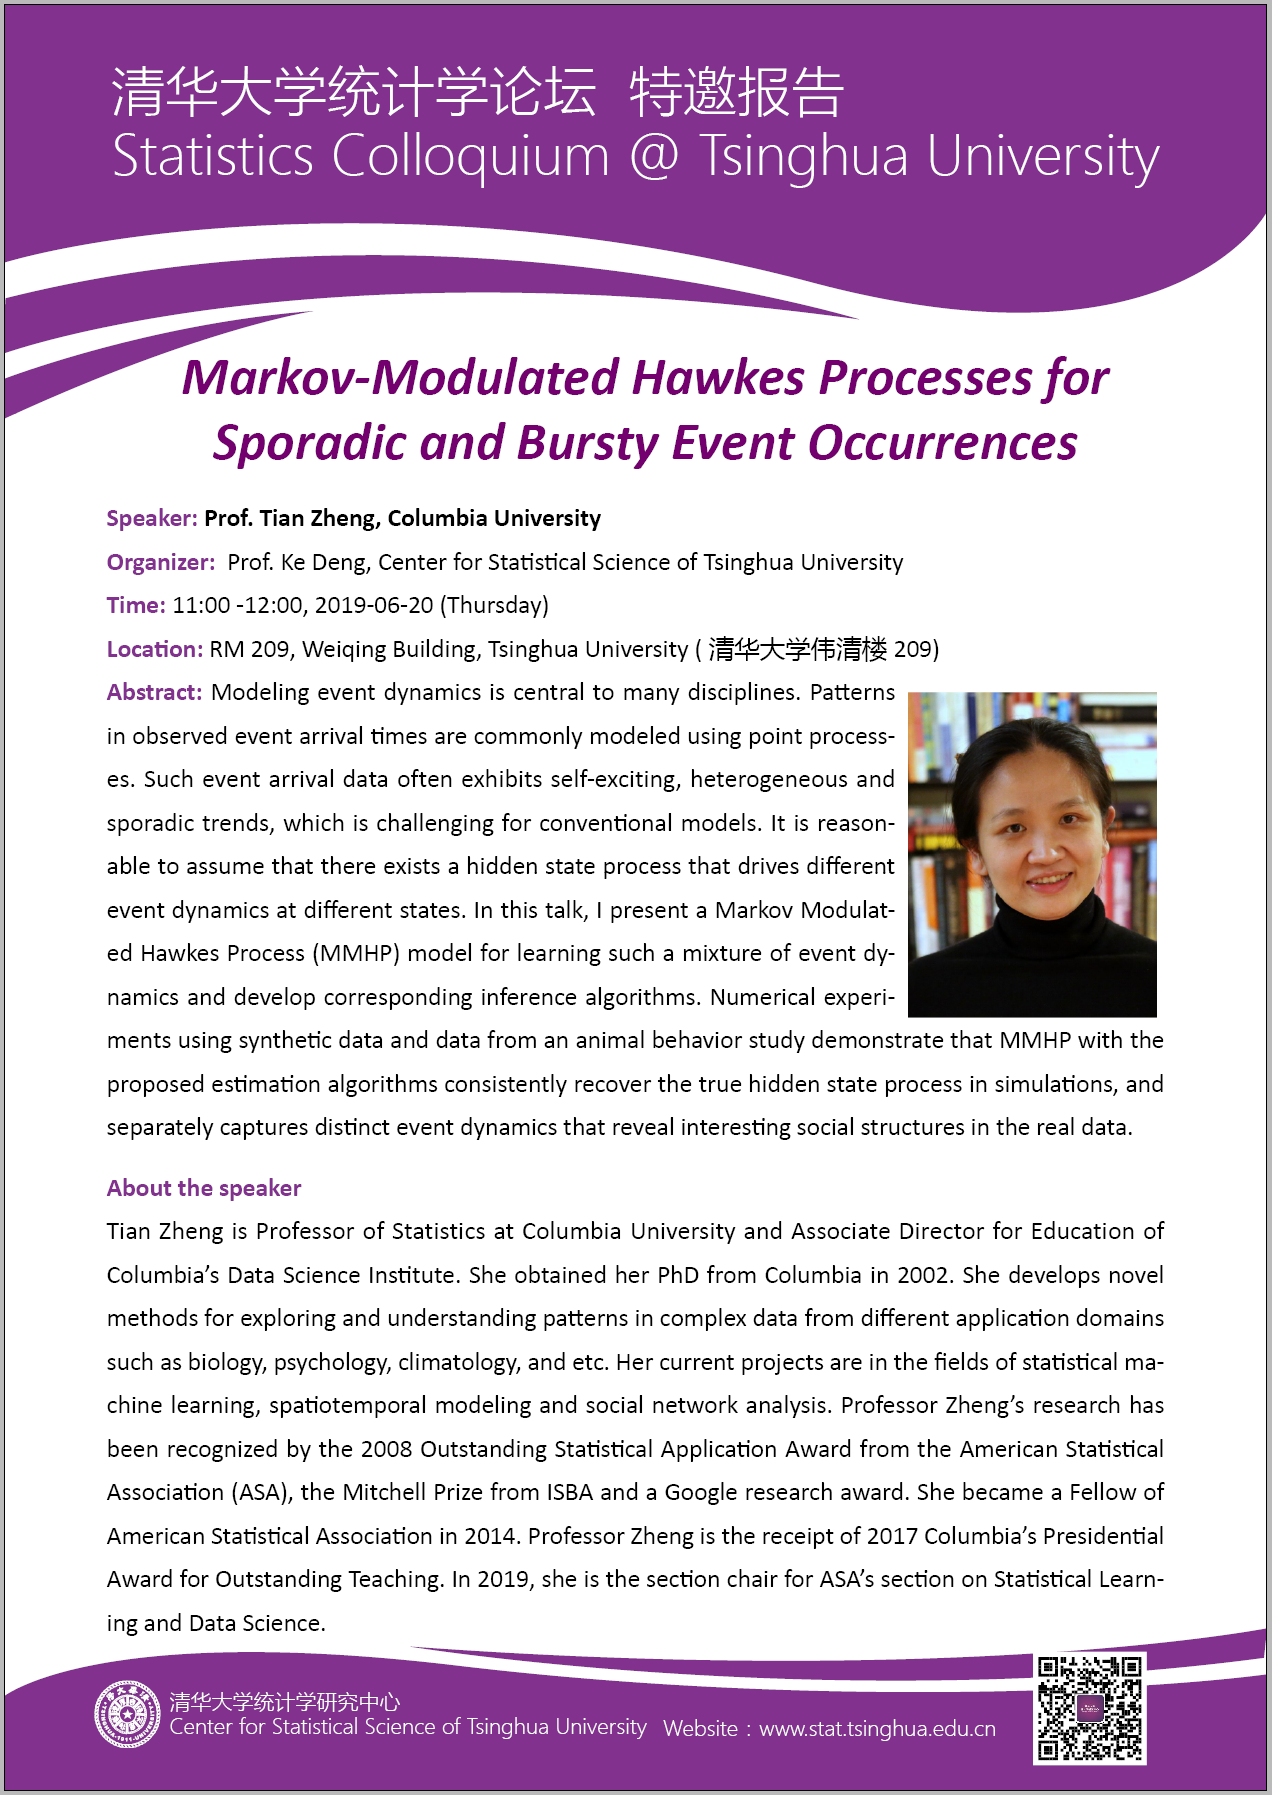 【统计学论坛】Markov-Modulated Hawkes Processes for Sporadic and Bursty Event Occurrences